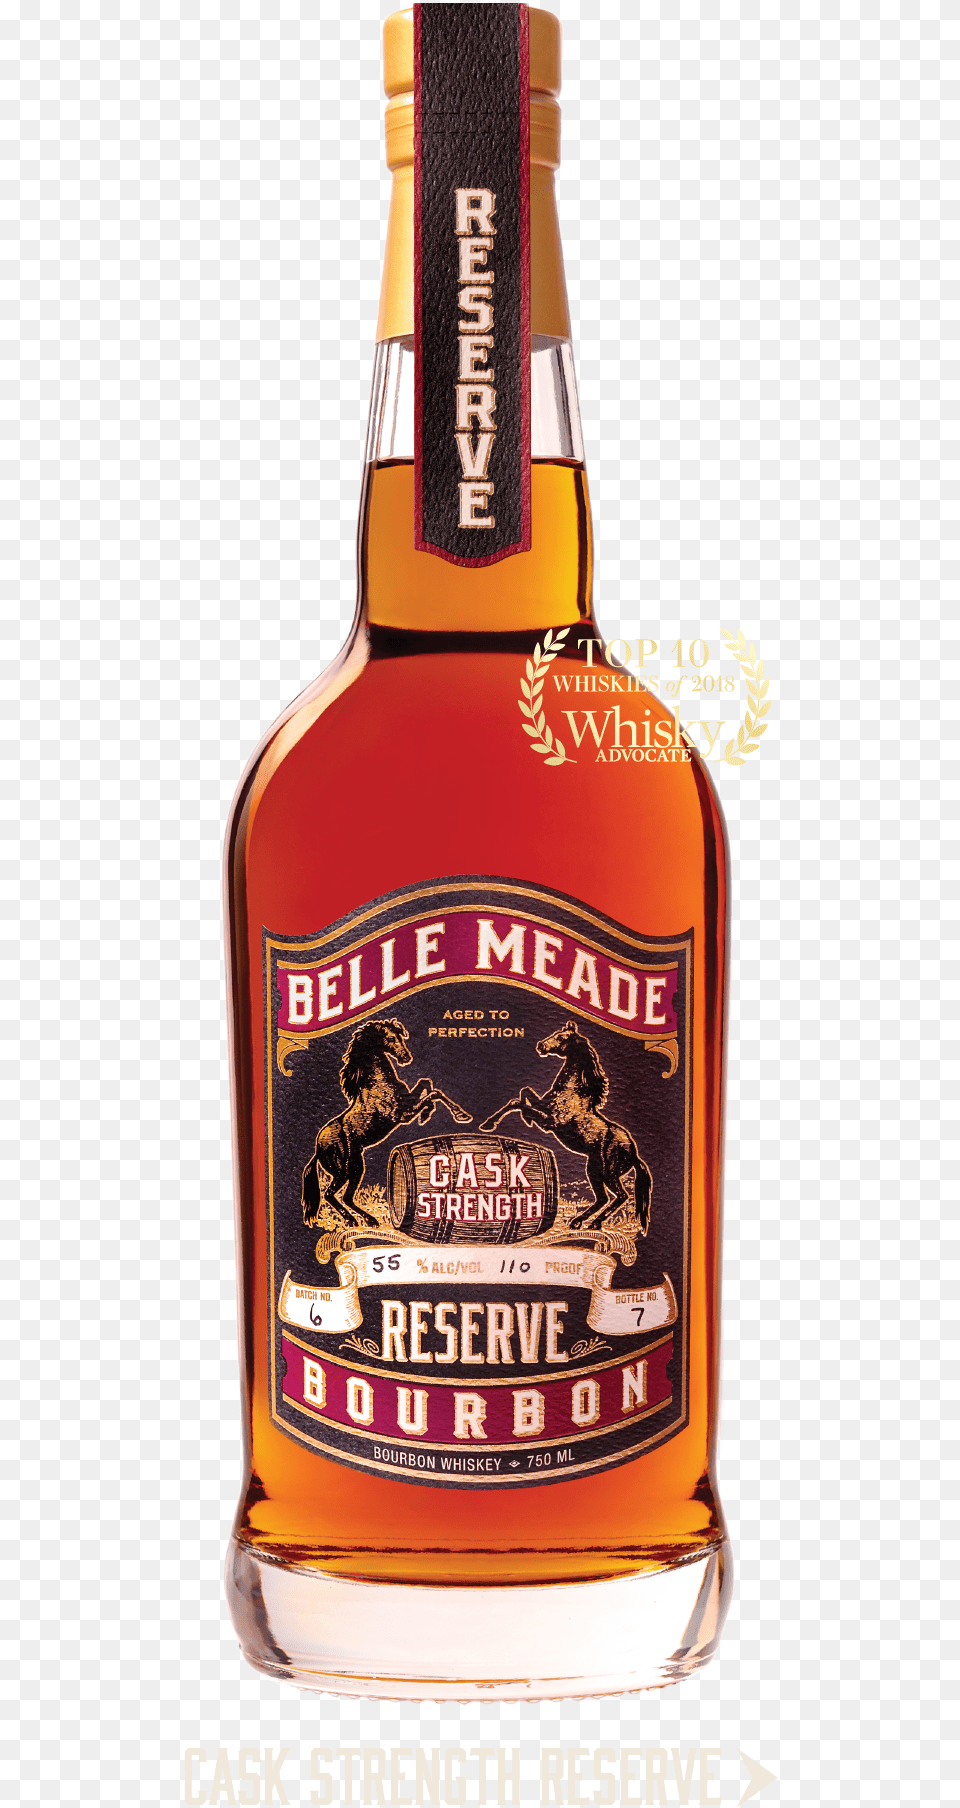 Belle Meade Bourbon Cask Strength Reserve, Alcohol, Beverage, Liquor, Beer Free Png